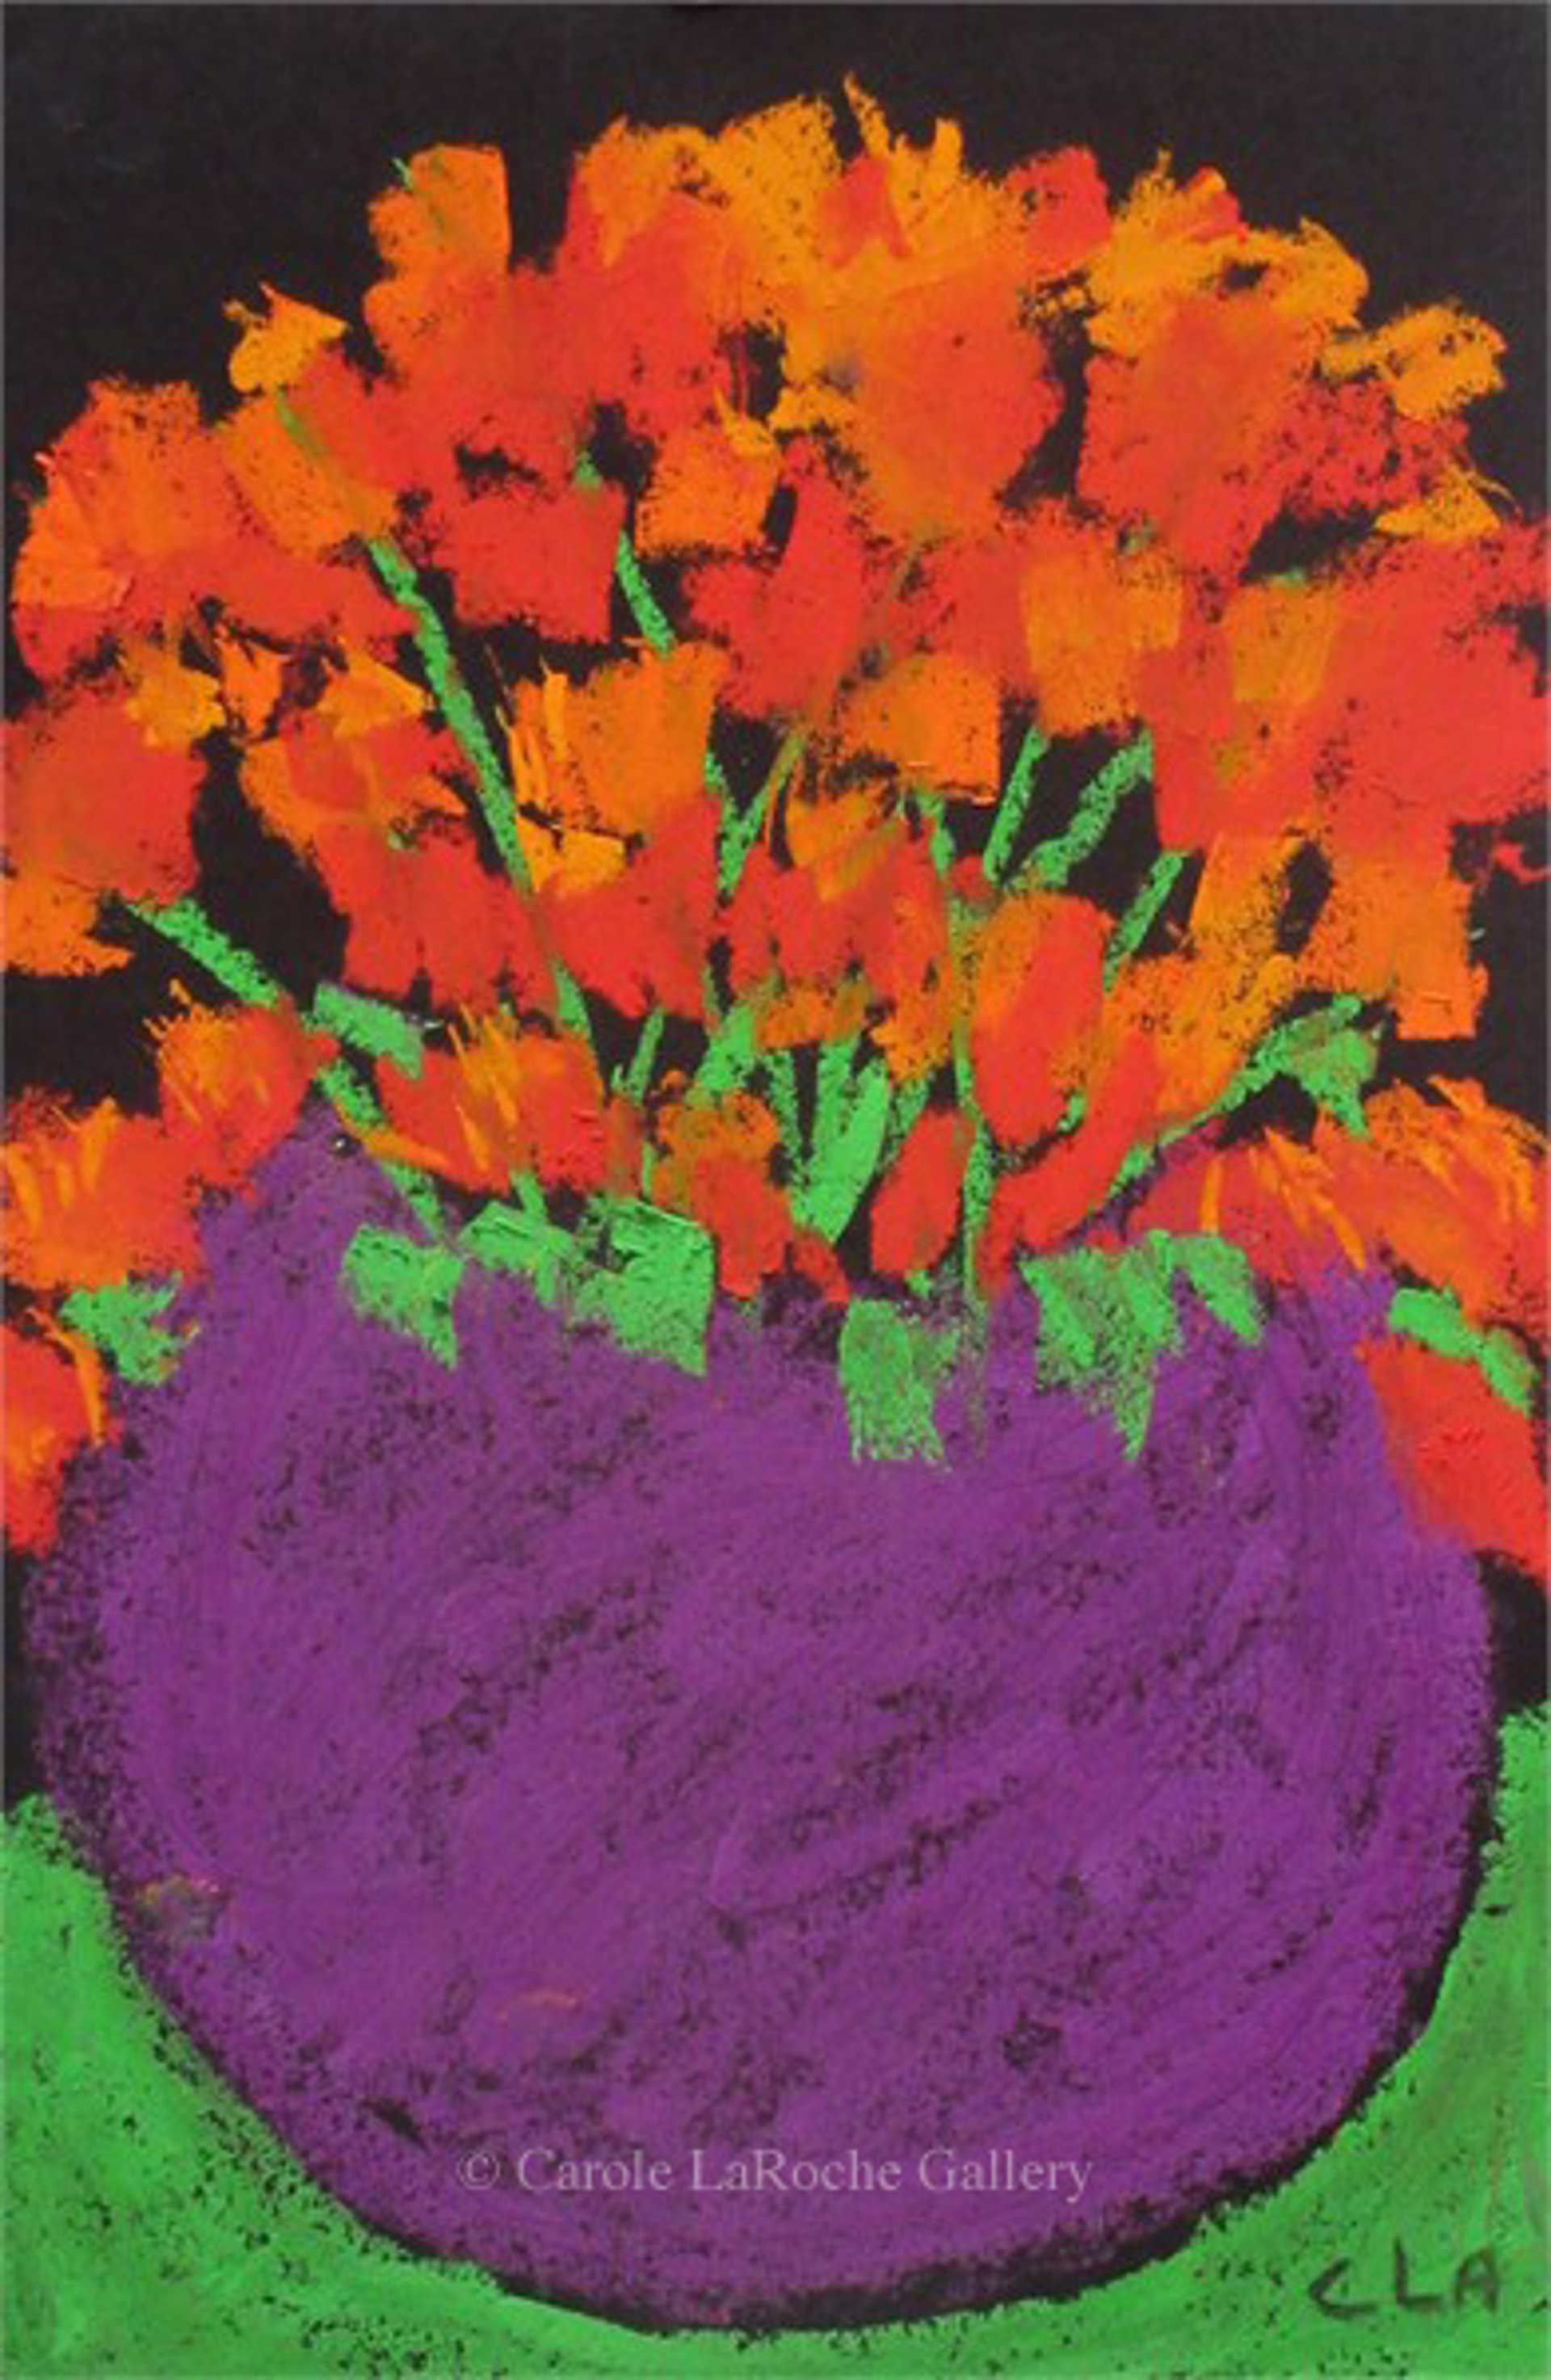 FLOWERS IN PURPLE VASE by Carole LaRoche